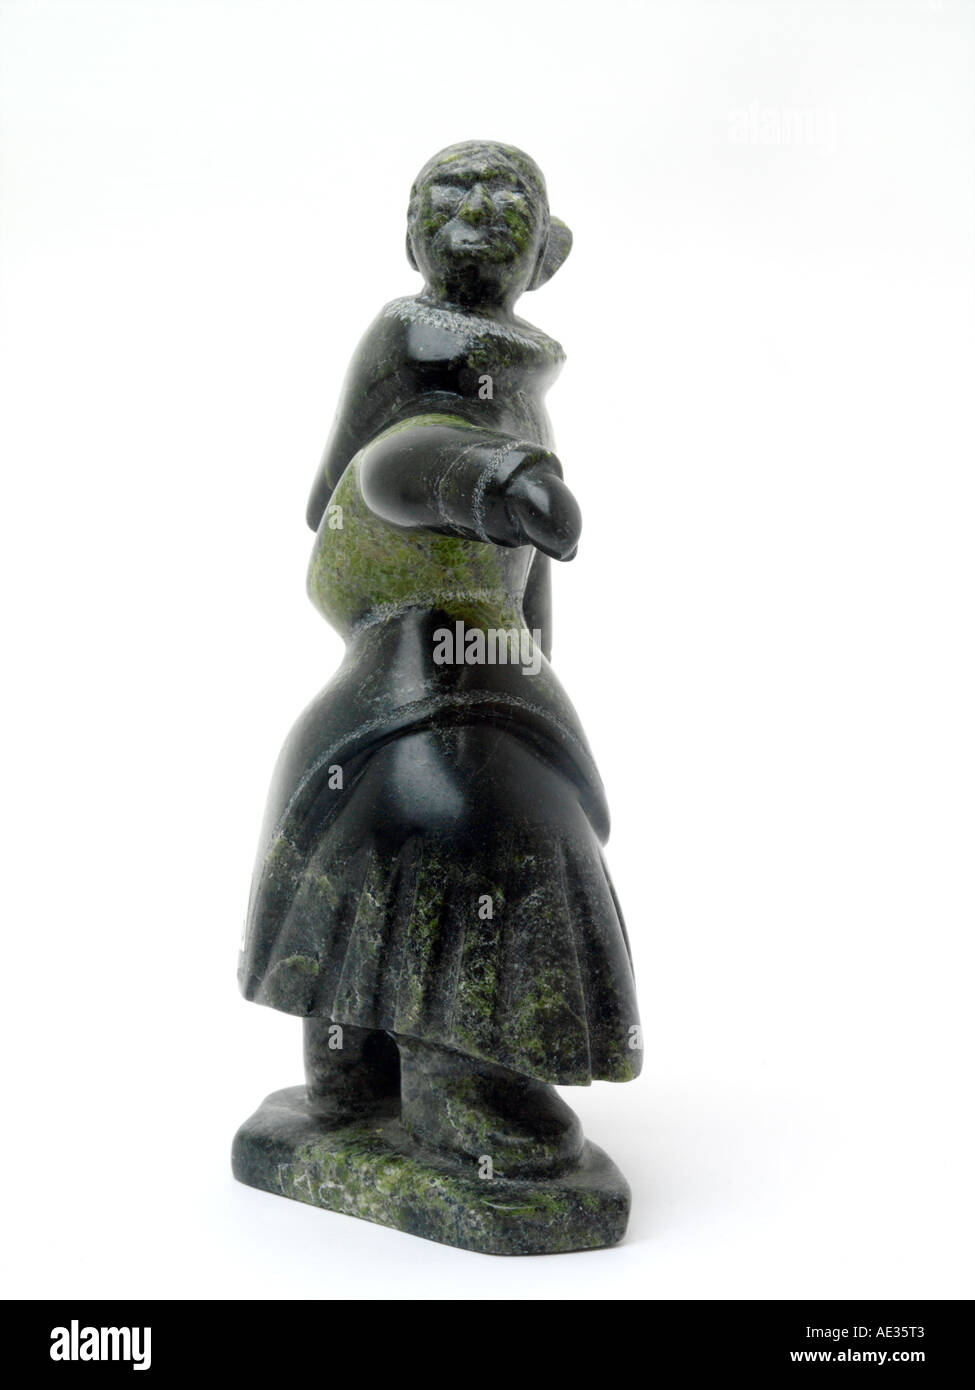 Canada - Cape Dorset Sculpture d'art inuit par Mary 10850 Oshutsiaq - Femme faits de pierre vert foncé Serpentine Banque D'Images